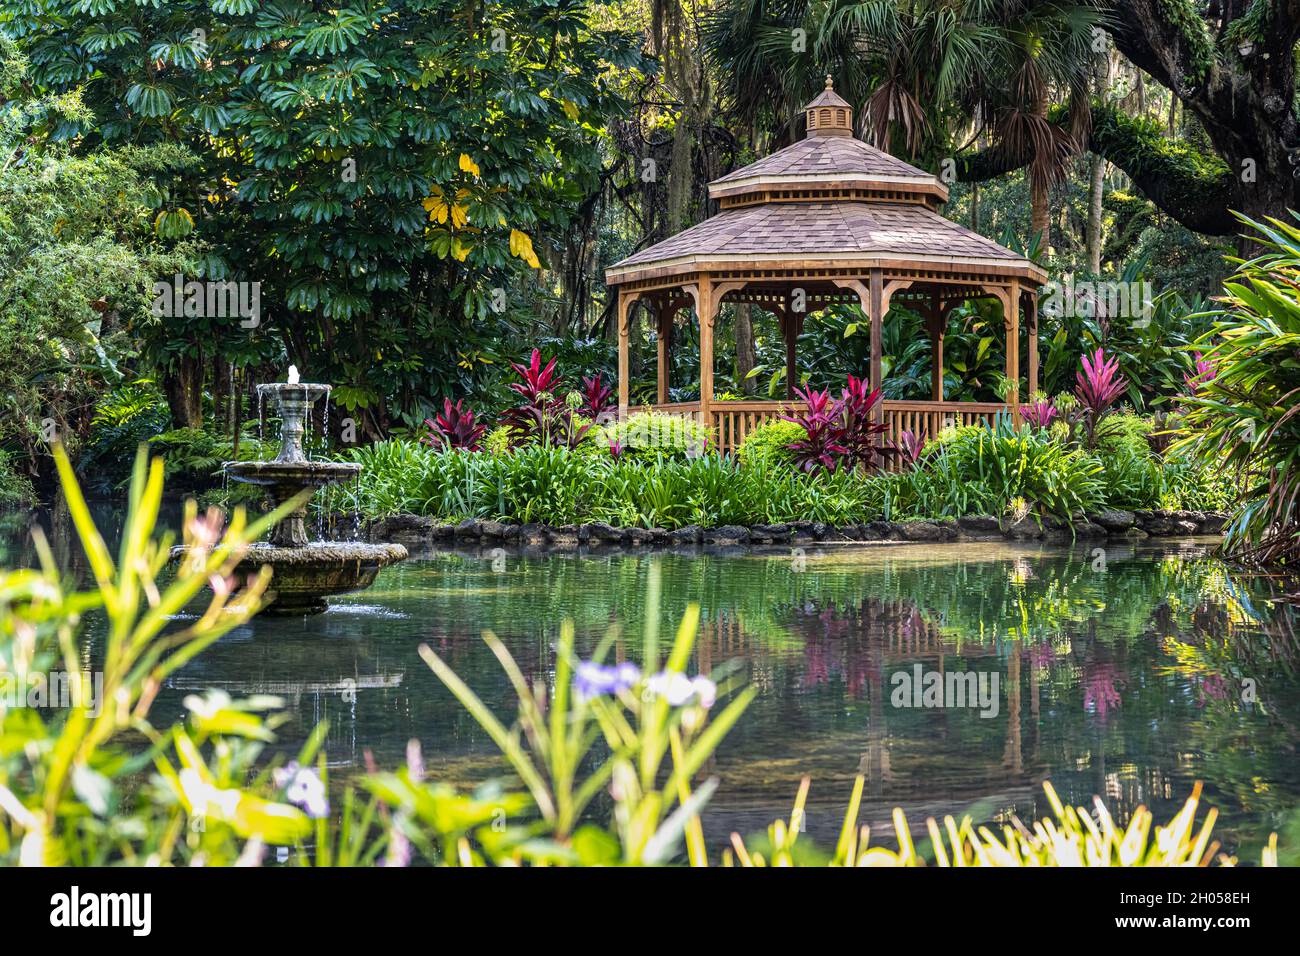 Belvédère en bois pittoresque et étang dans les jardins formels du parc national Washington Oaks Gardens à Palm Coast, Floride.(ÉTATS-UNIS) Banque D'Images